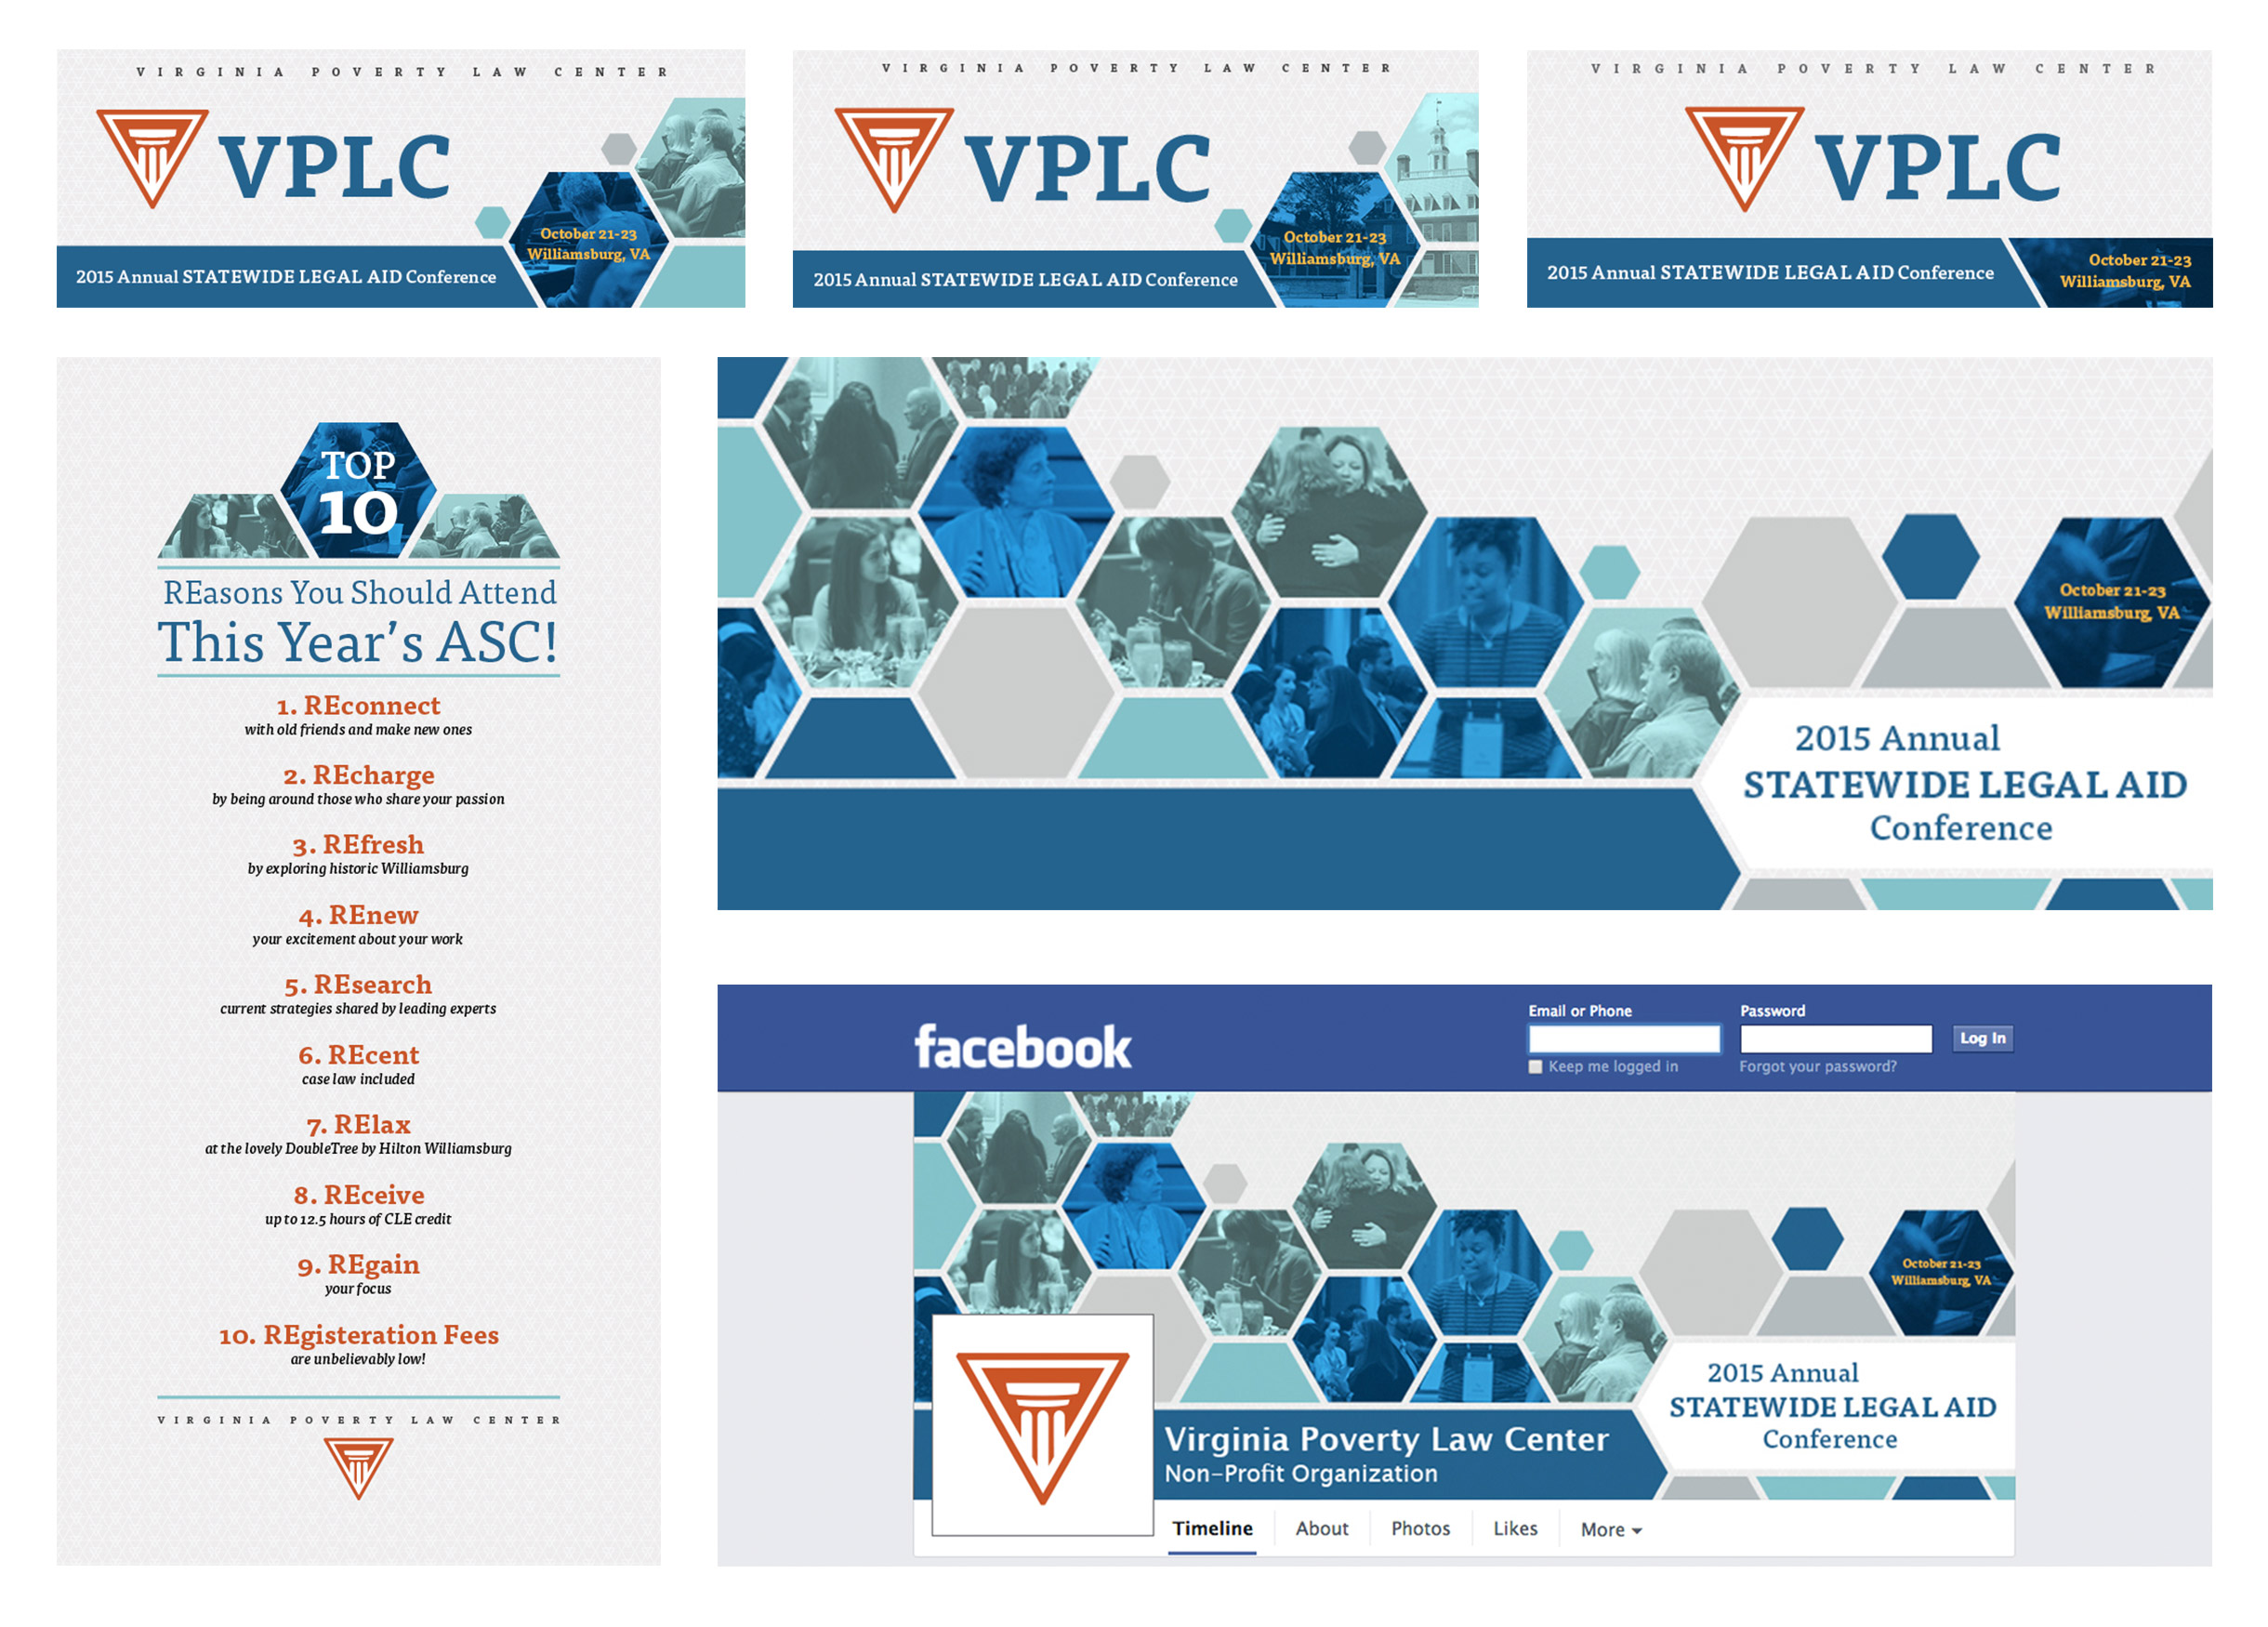 WEBSITE_VPLC_WebImages